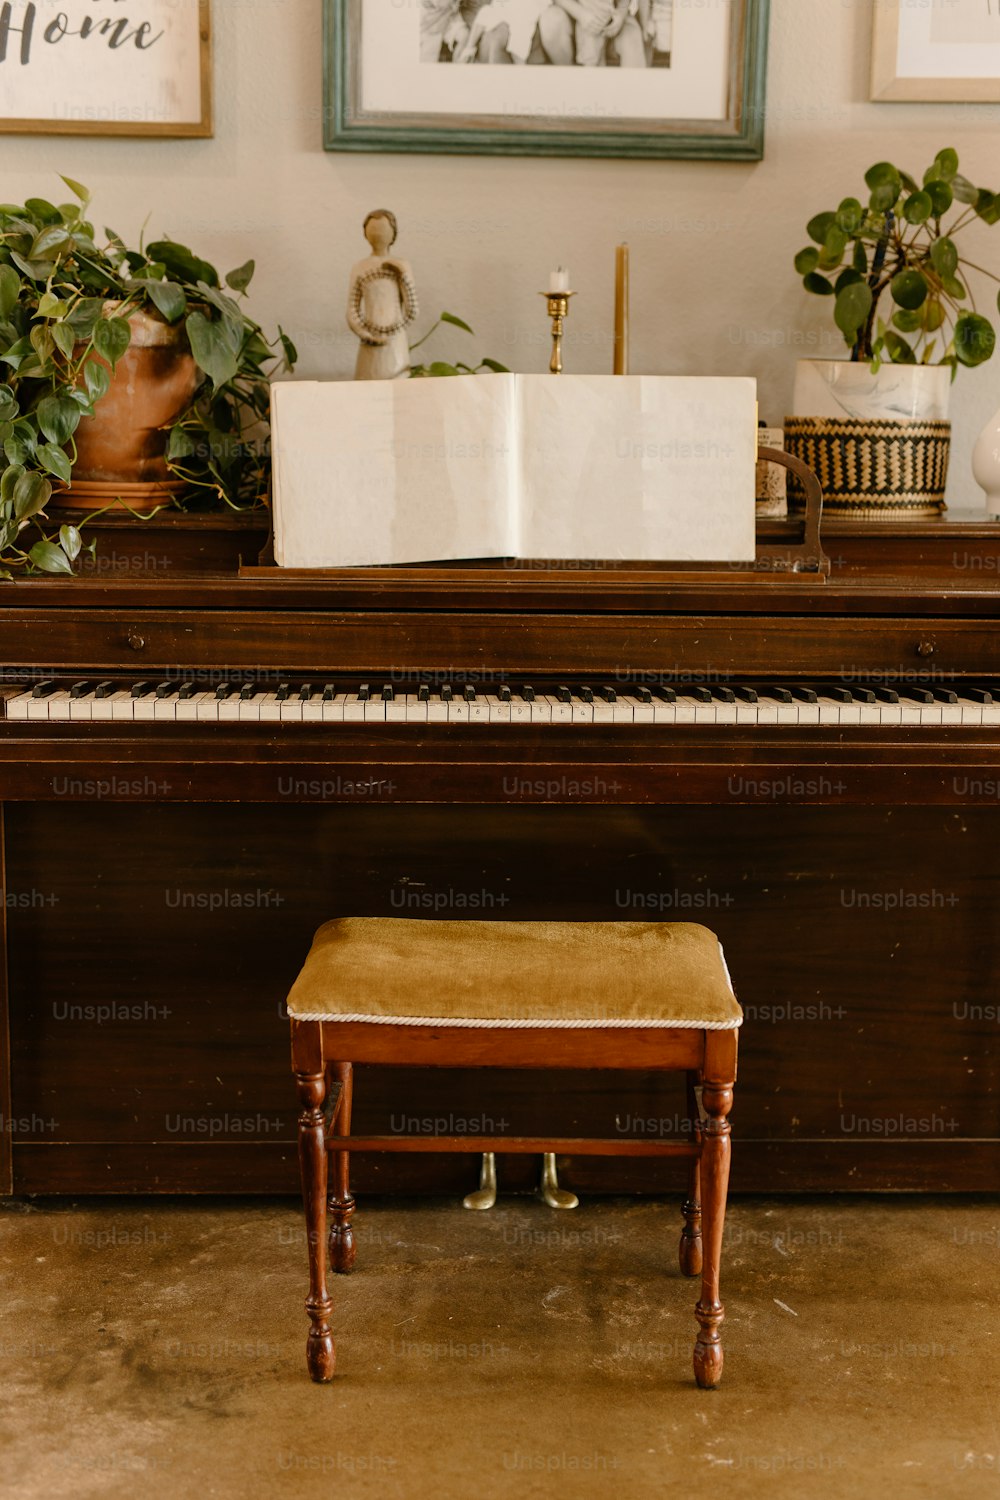 植物の写真の前に座っているピアノ